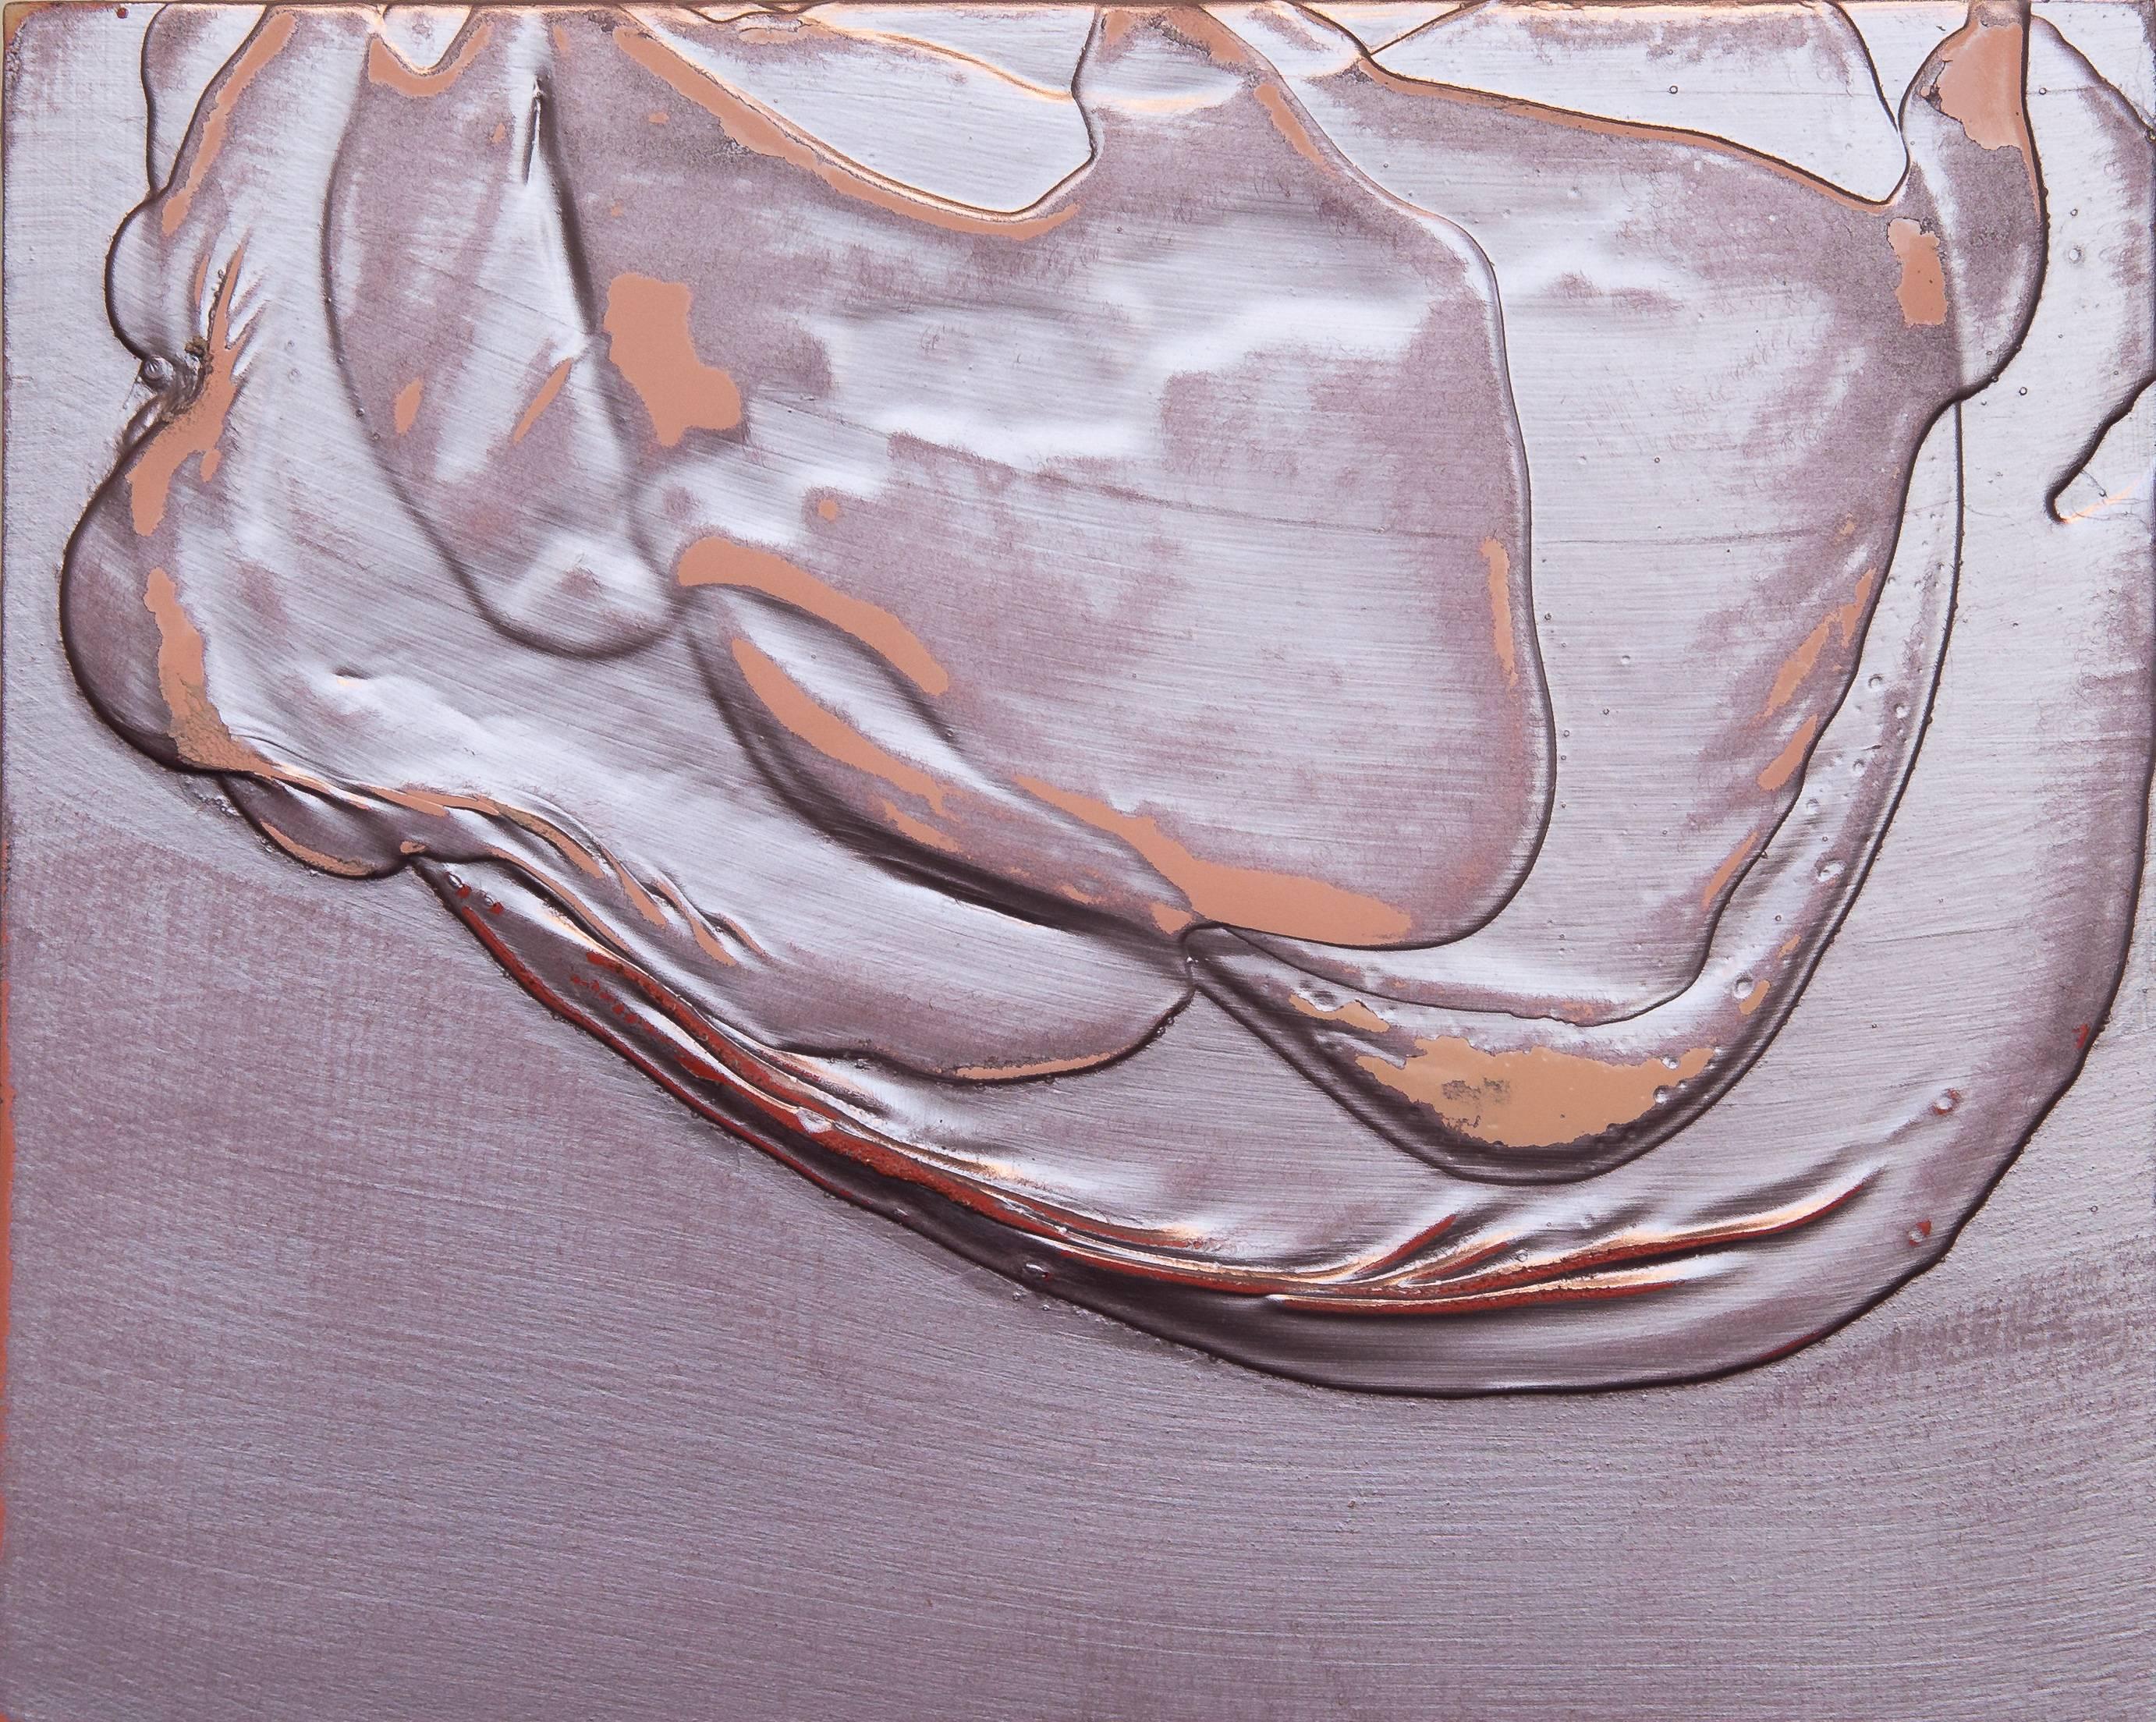 Abstract Painting Renee Phillips - Étude de la méditation XXIII Petite peinture abstraite texturée de couleur rose et or